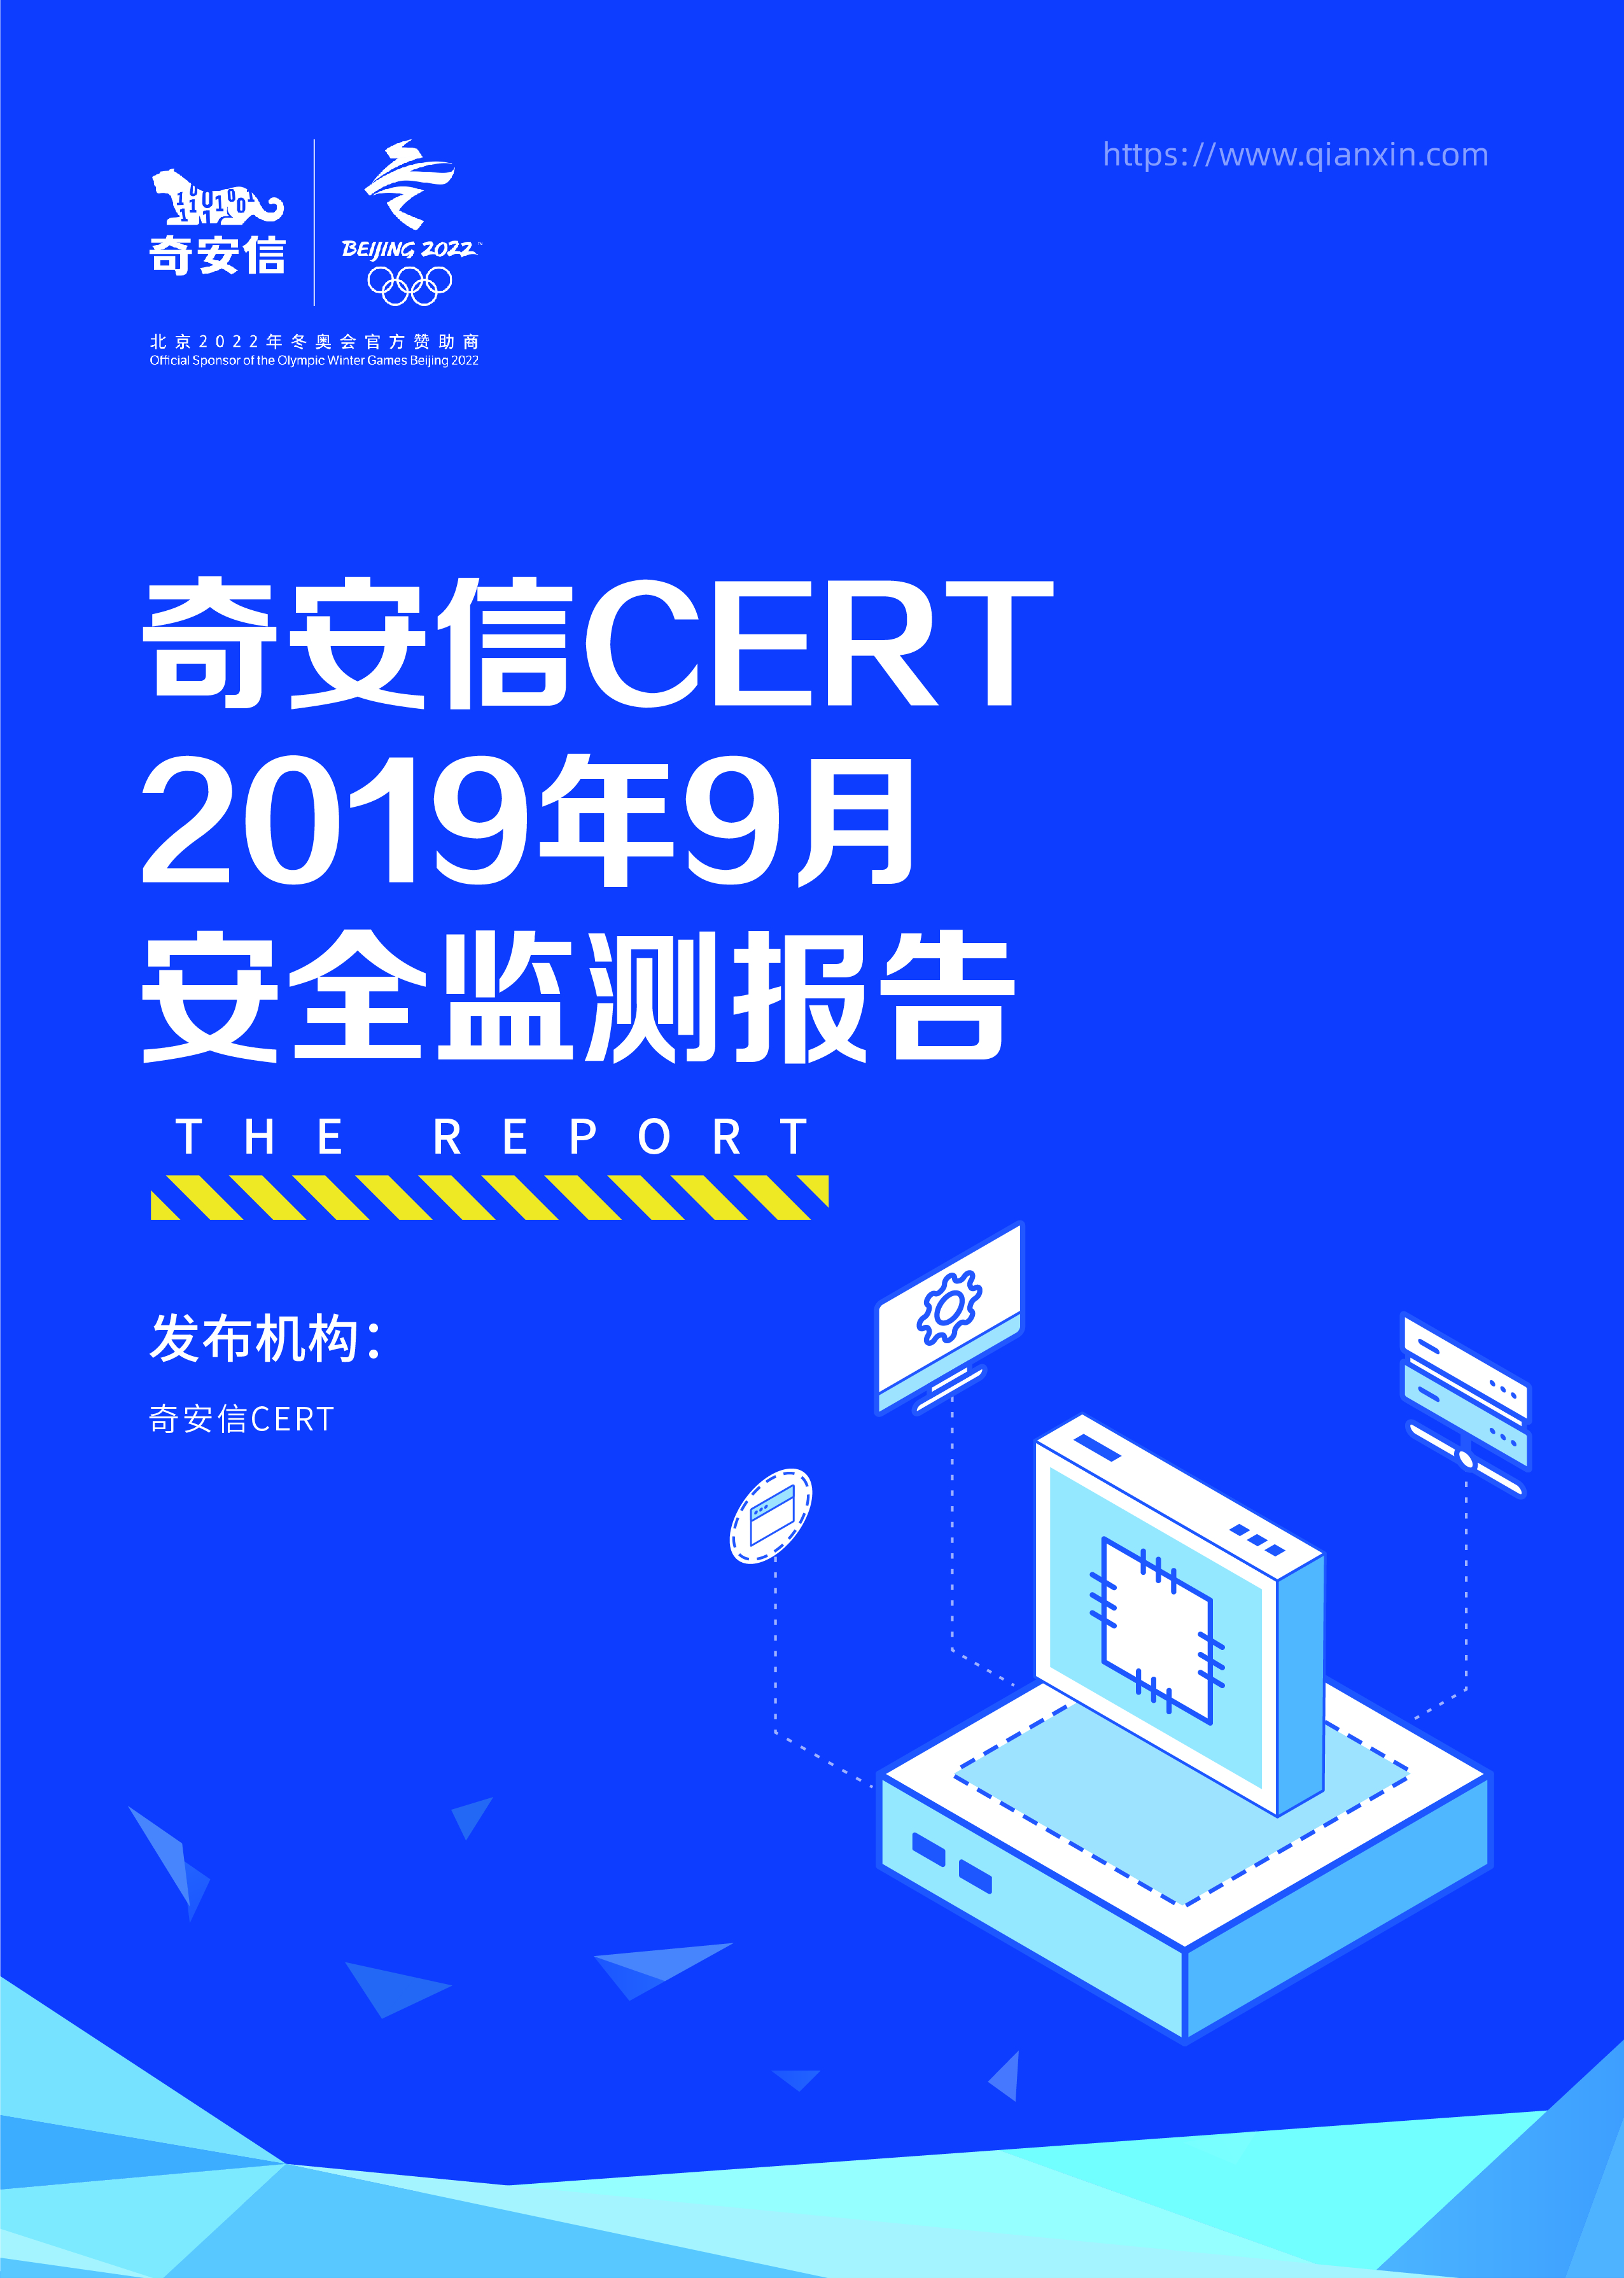 奇安信 CERT 2019年9月安全监测报告